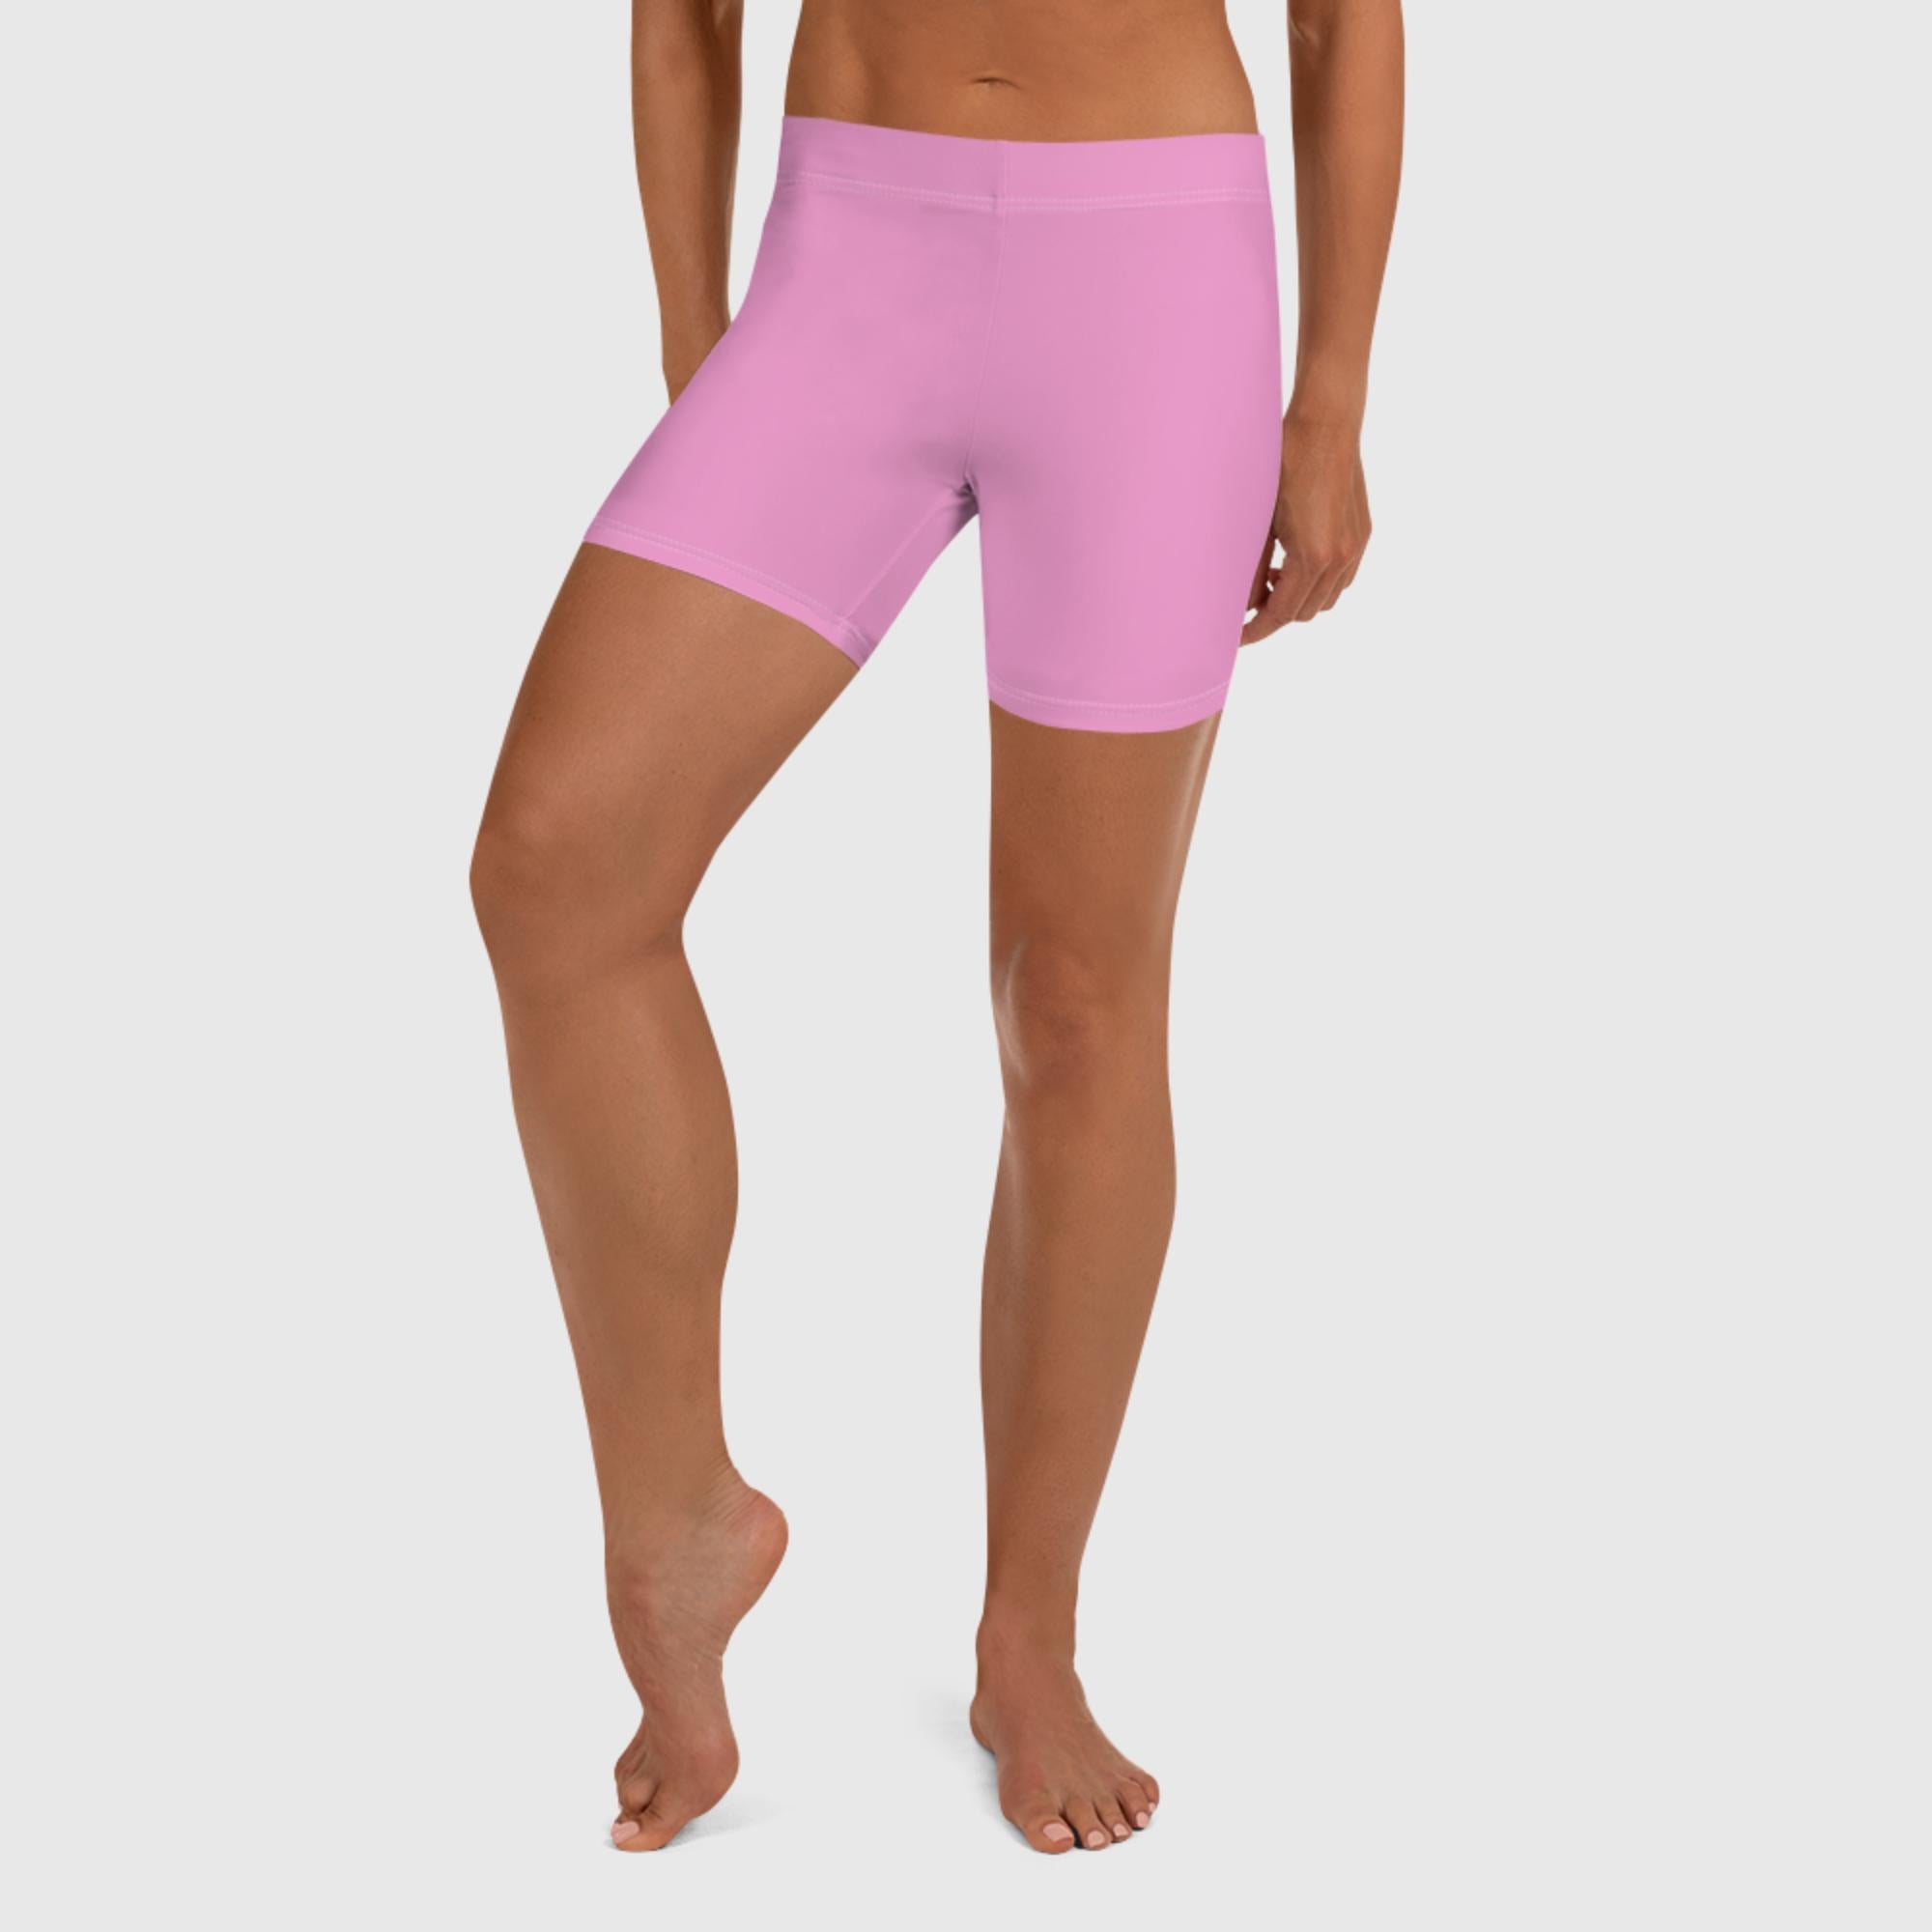 Women's Shorts - Pink - Sunset Harbor Clothing